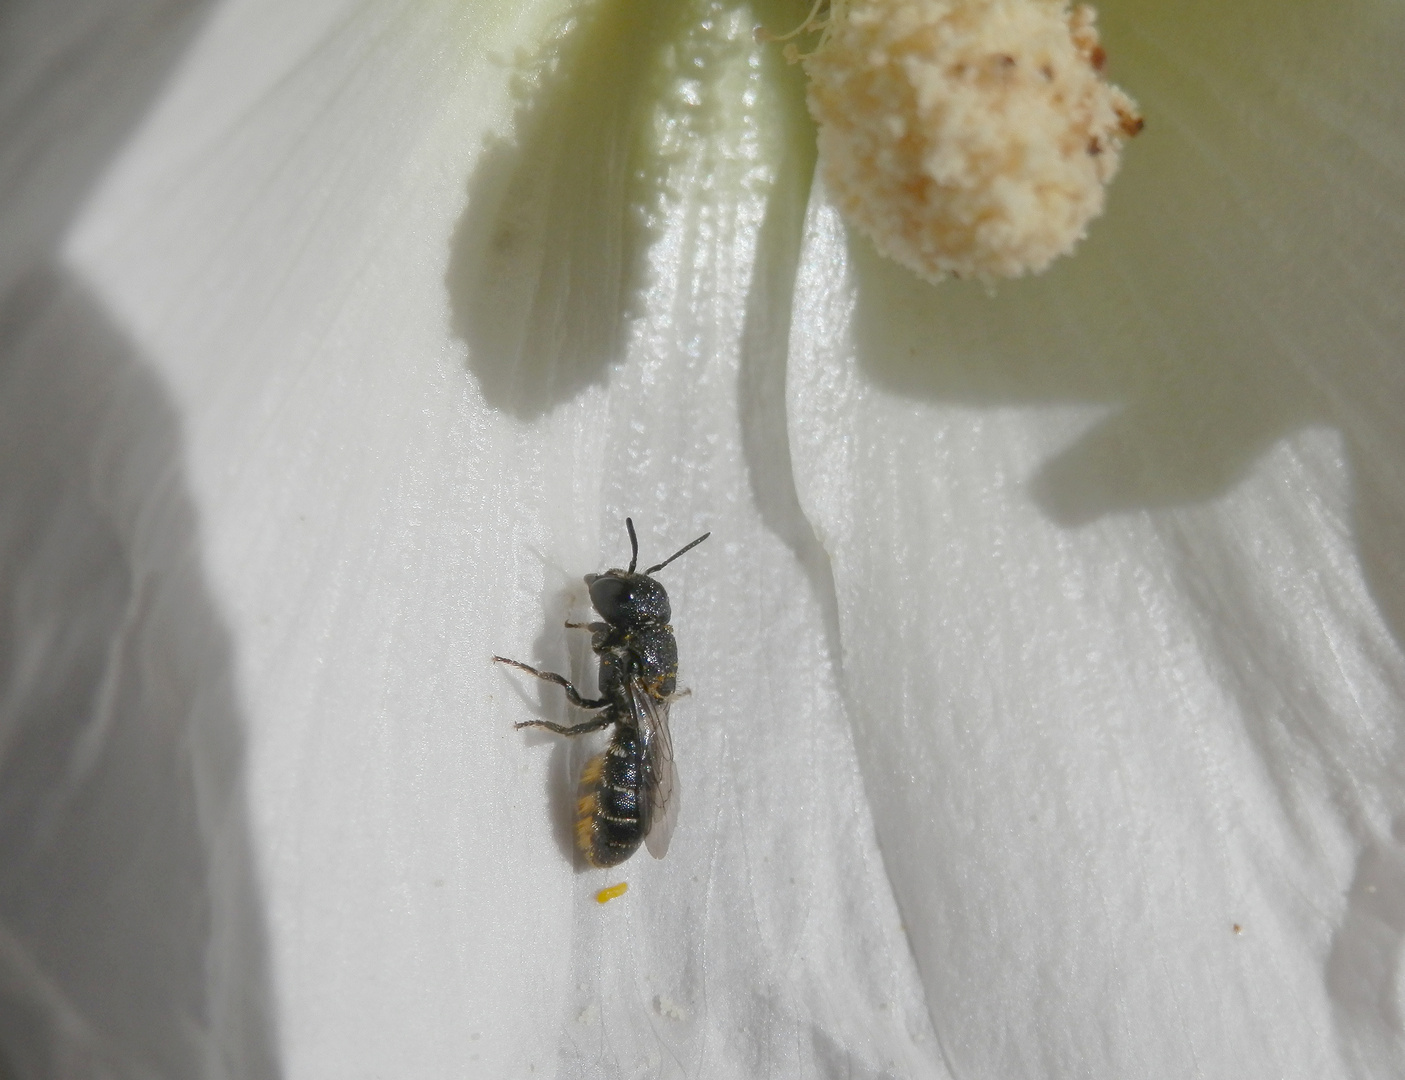 Gewöhnliche Löcherbiene (Heriades truncorum) auf weißer Stockrose